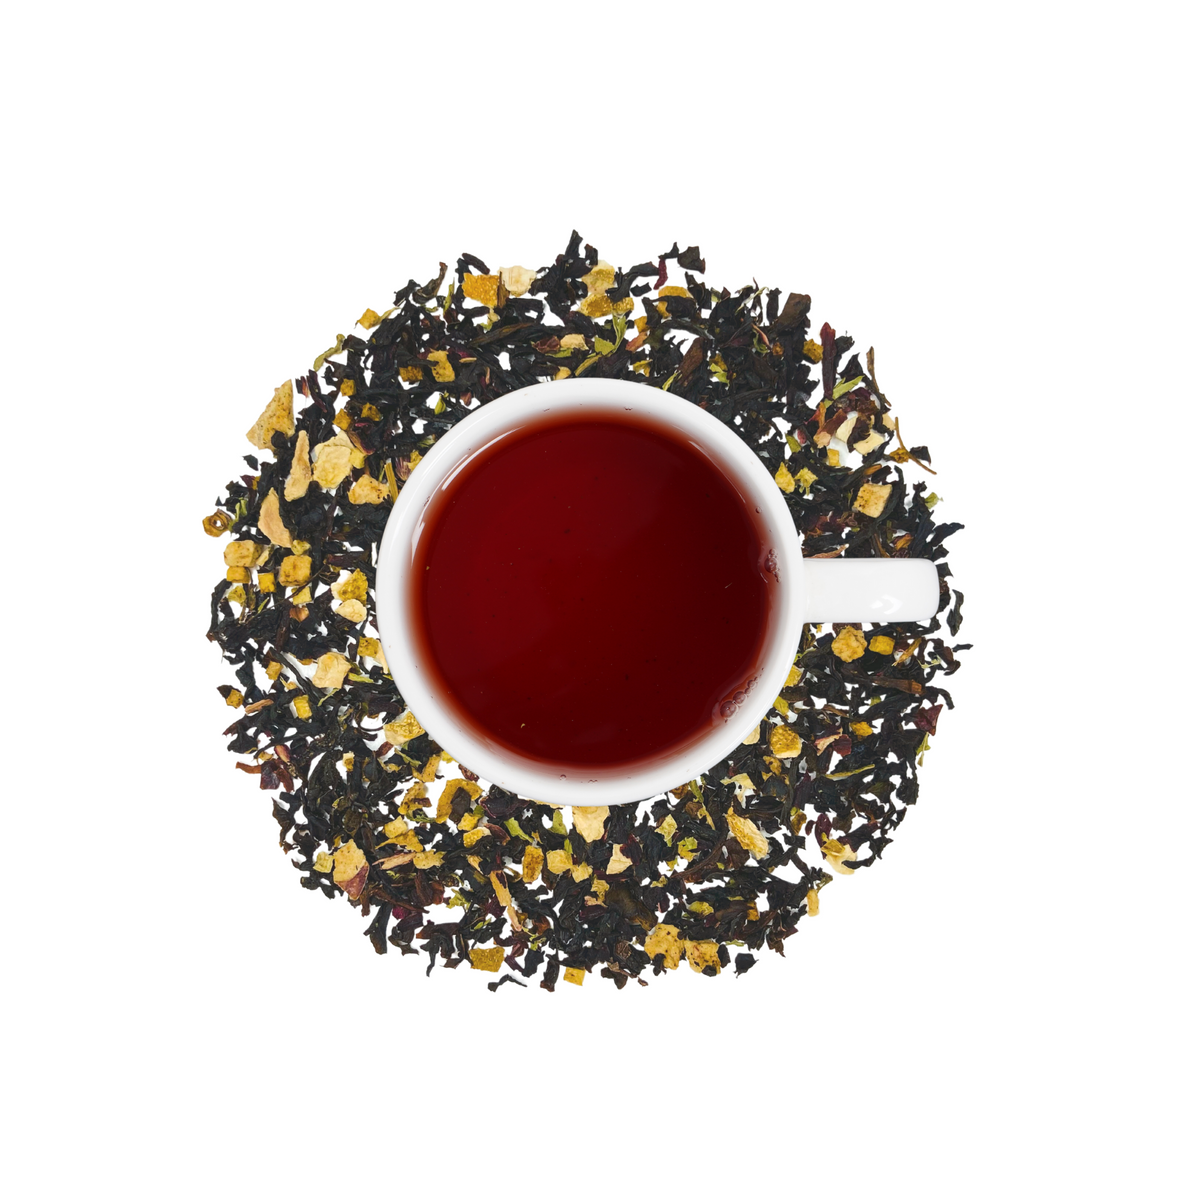 Berry Blush Black Tea - Loose Leaf Tea